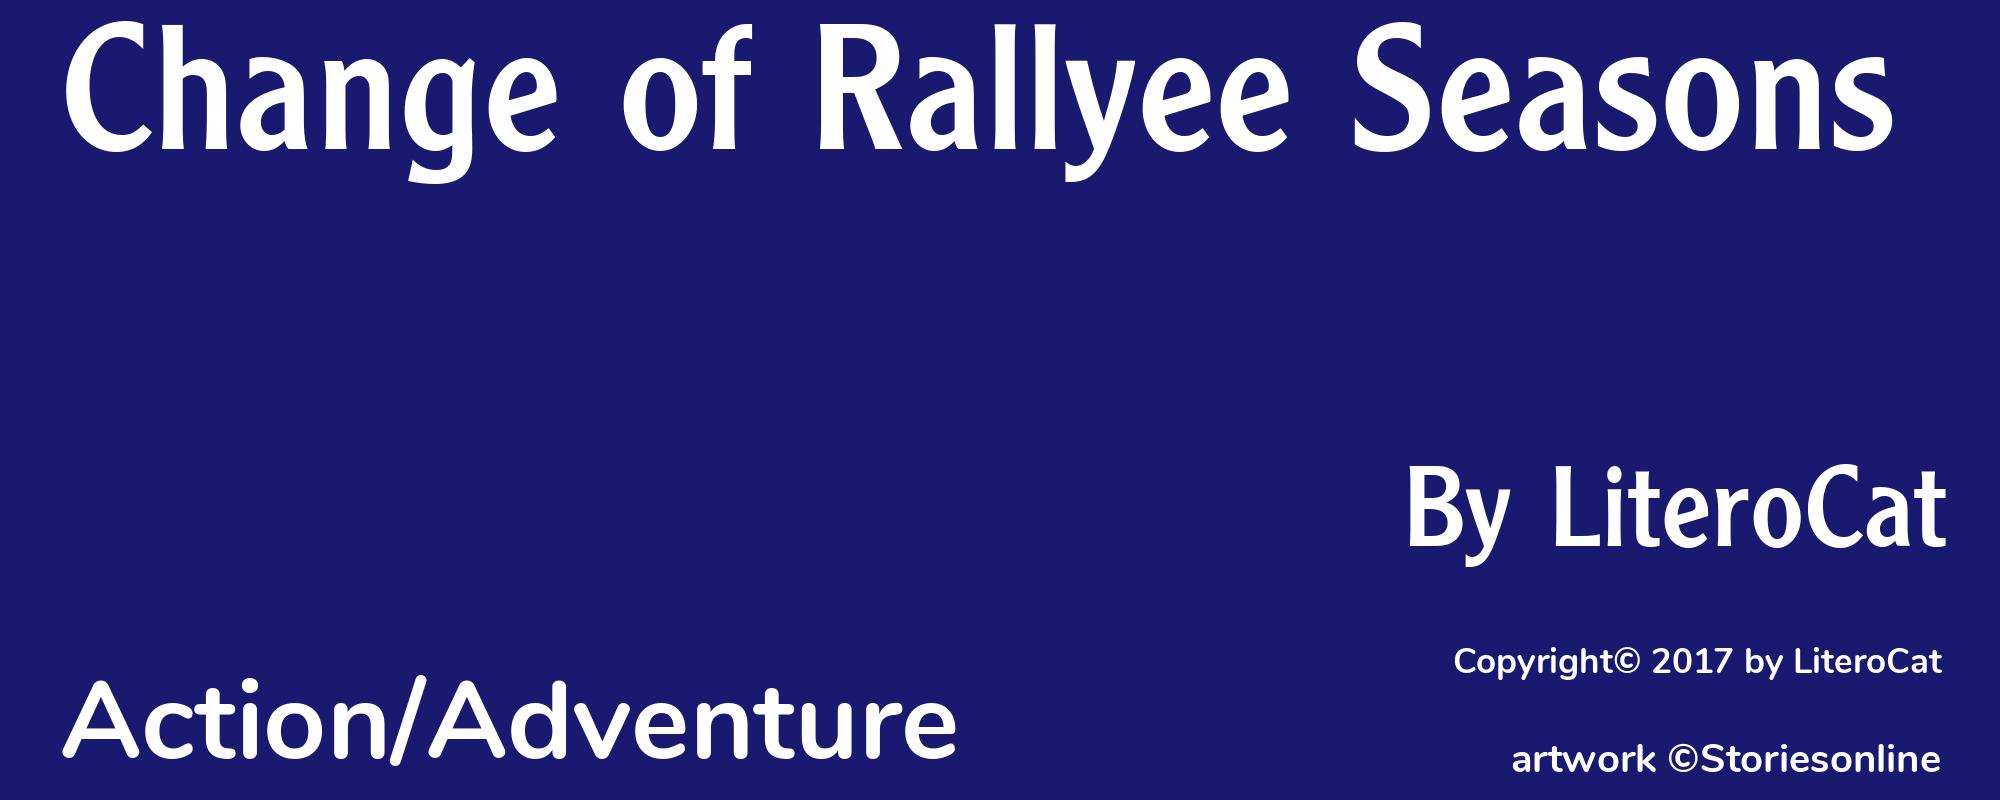 Change of Rallyee Seasons - Cover